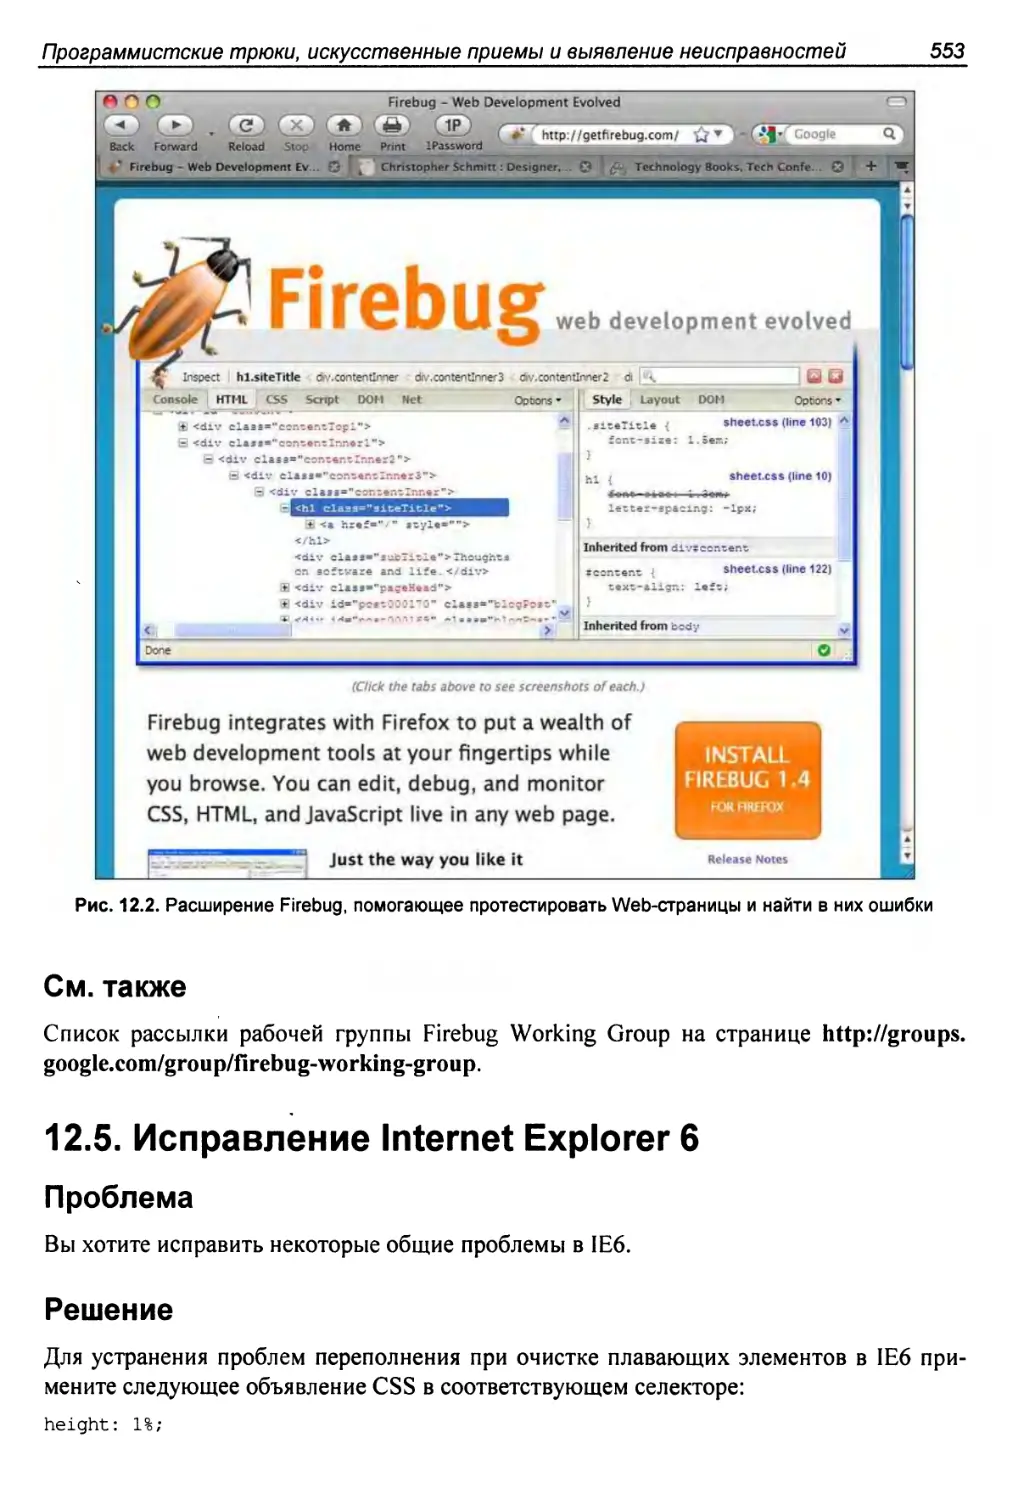 12.5. Исправление Internet Explorer 6